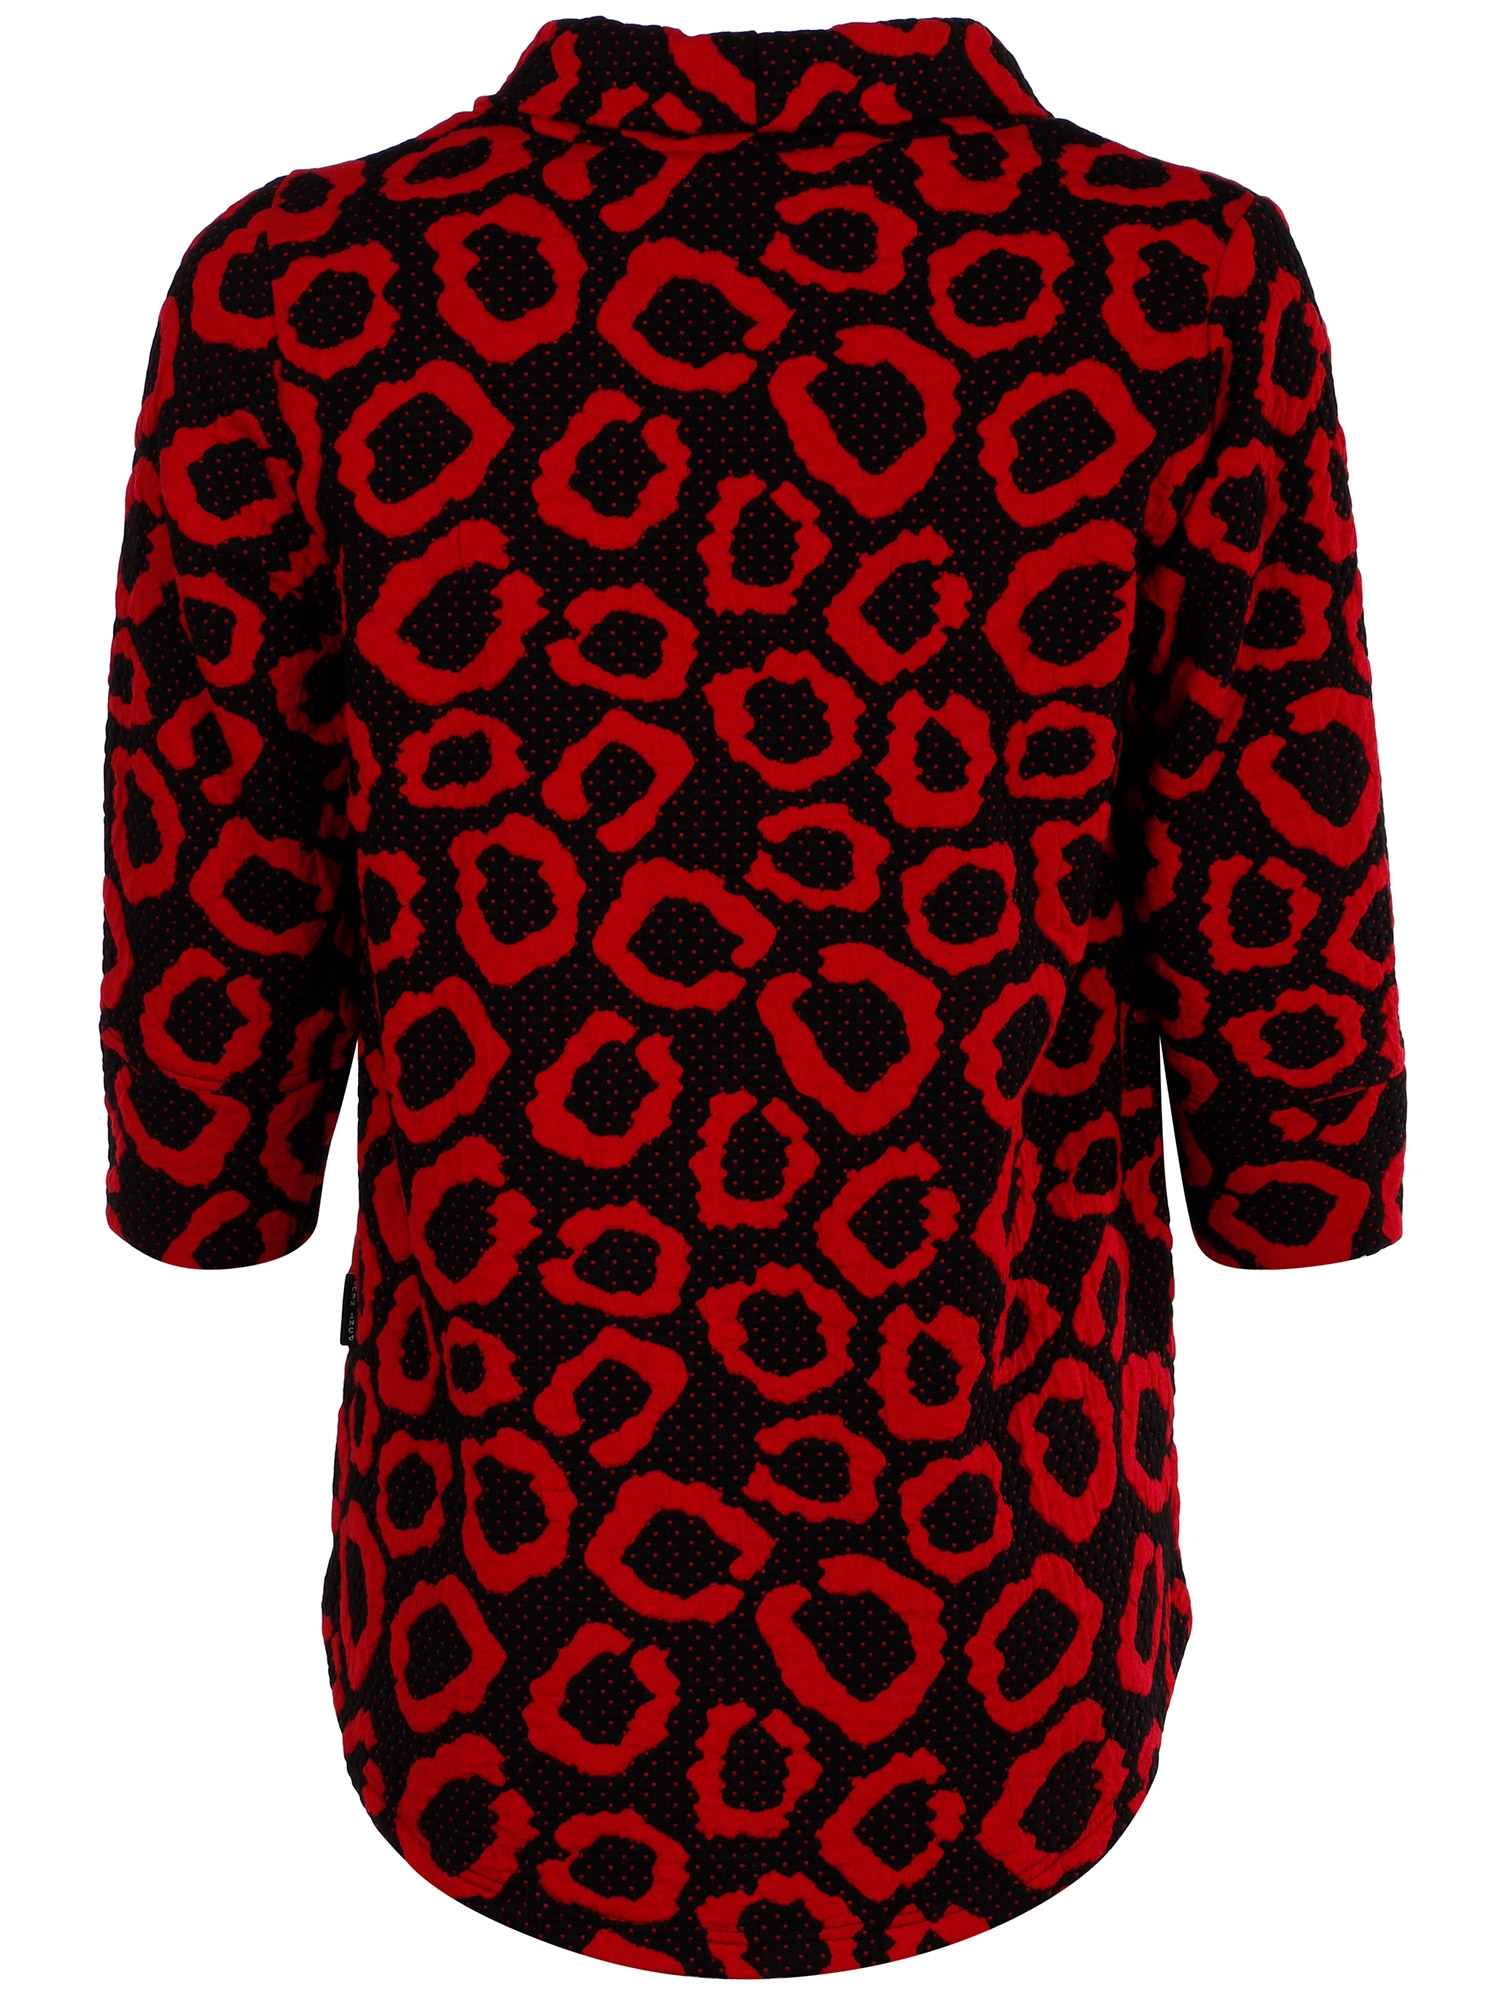 STEFFI - Sort bluse med rødt mønster fra Pont Neuf